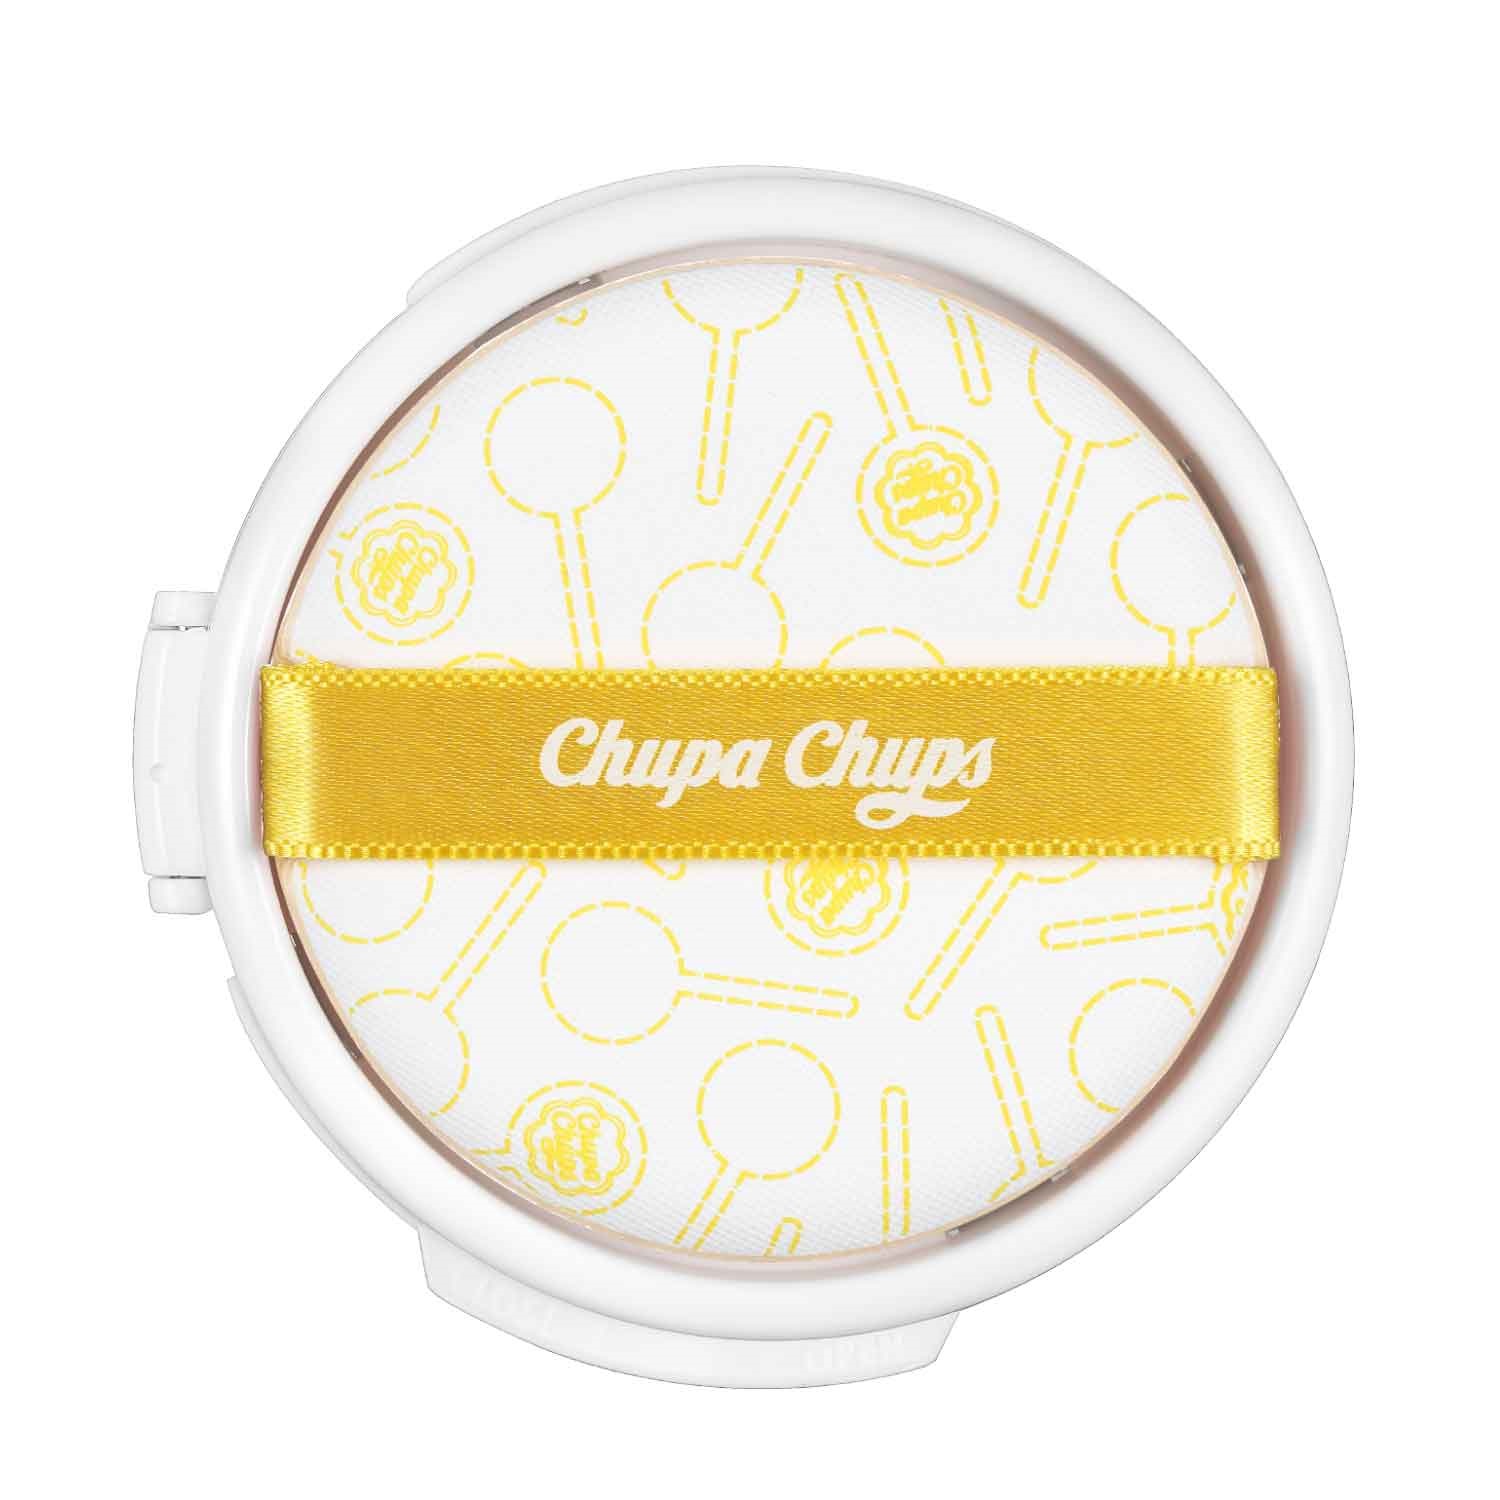 Chupa Chups Сменный блок для тональной основы-кушона 4.0 Medium, 14 г (Chupa Chups, Для лица)